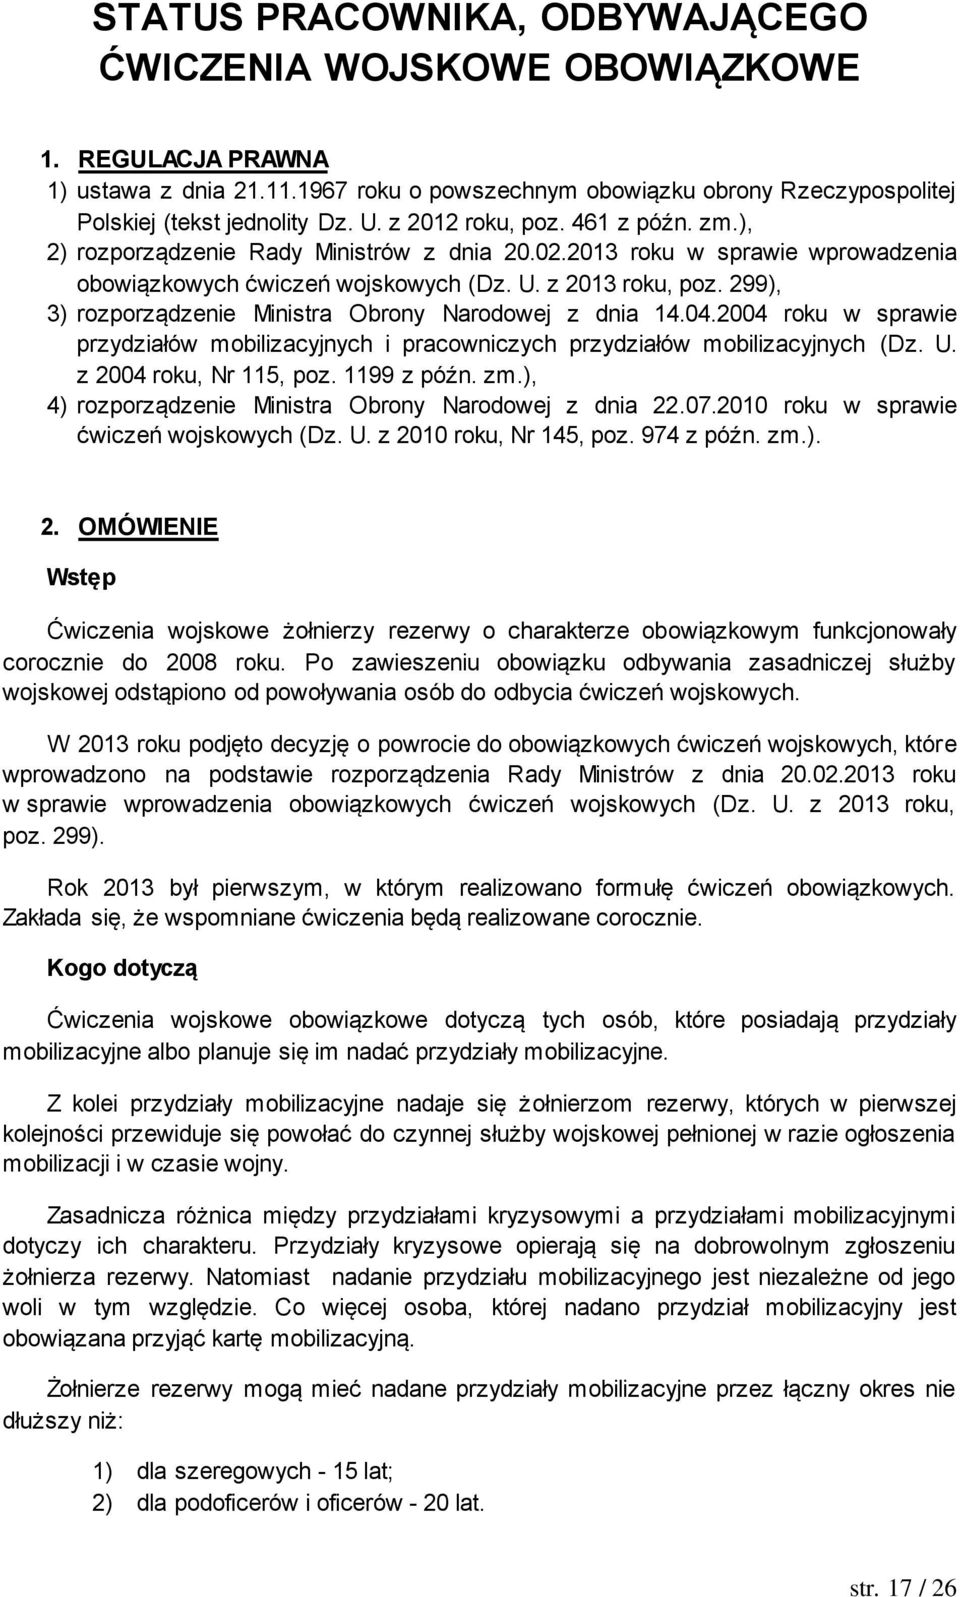 299), 3) rozporządzenie Ministra Obrony Narodowej z dnia 14.04.2004 roku w sprawie przydziałów mobilizacyjnych i pracowniczych przydziałów mobilizacyjnych (Dz. U. z 2004 roku, Nr 115, poz.